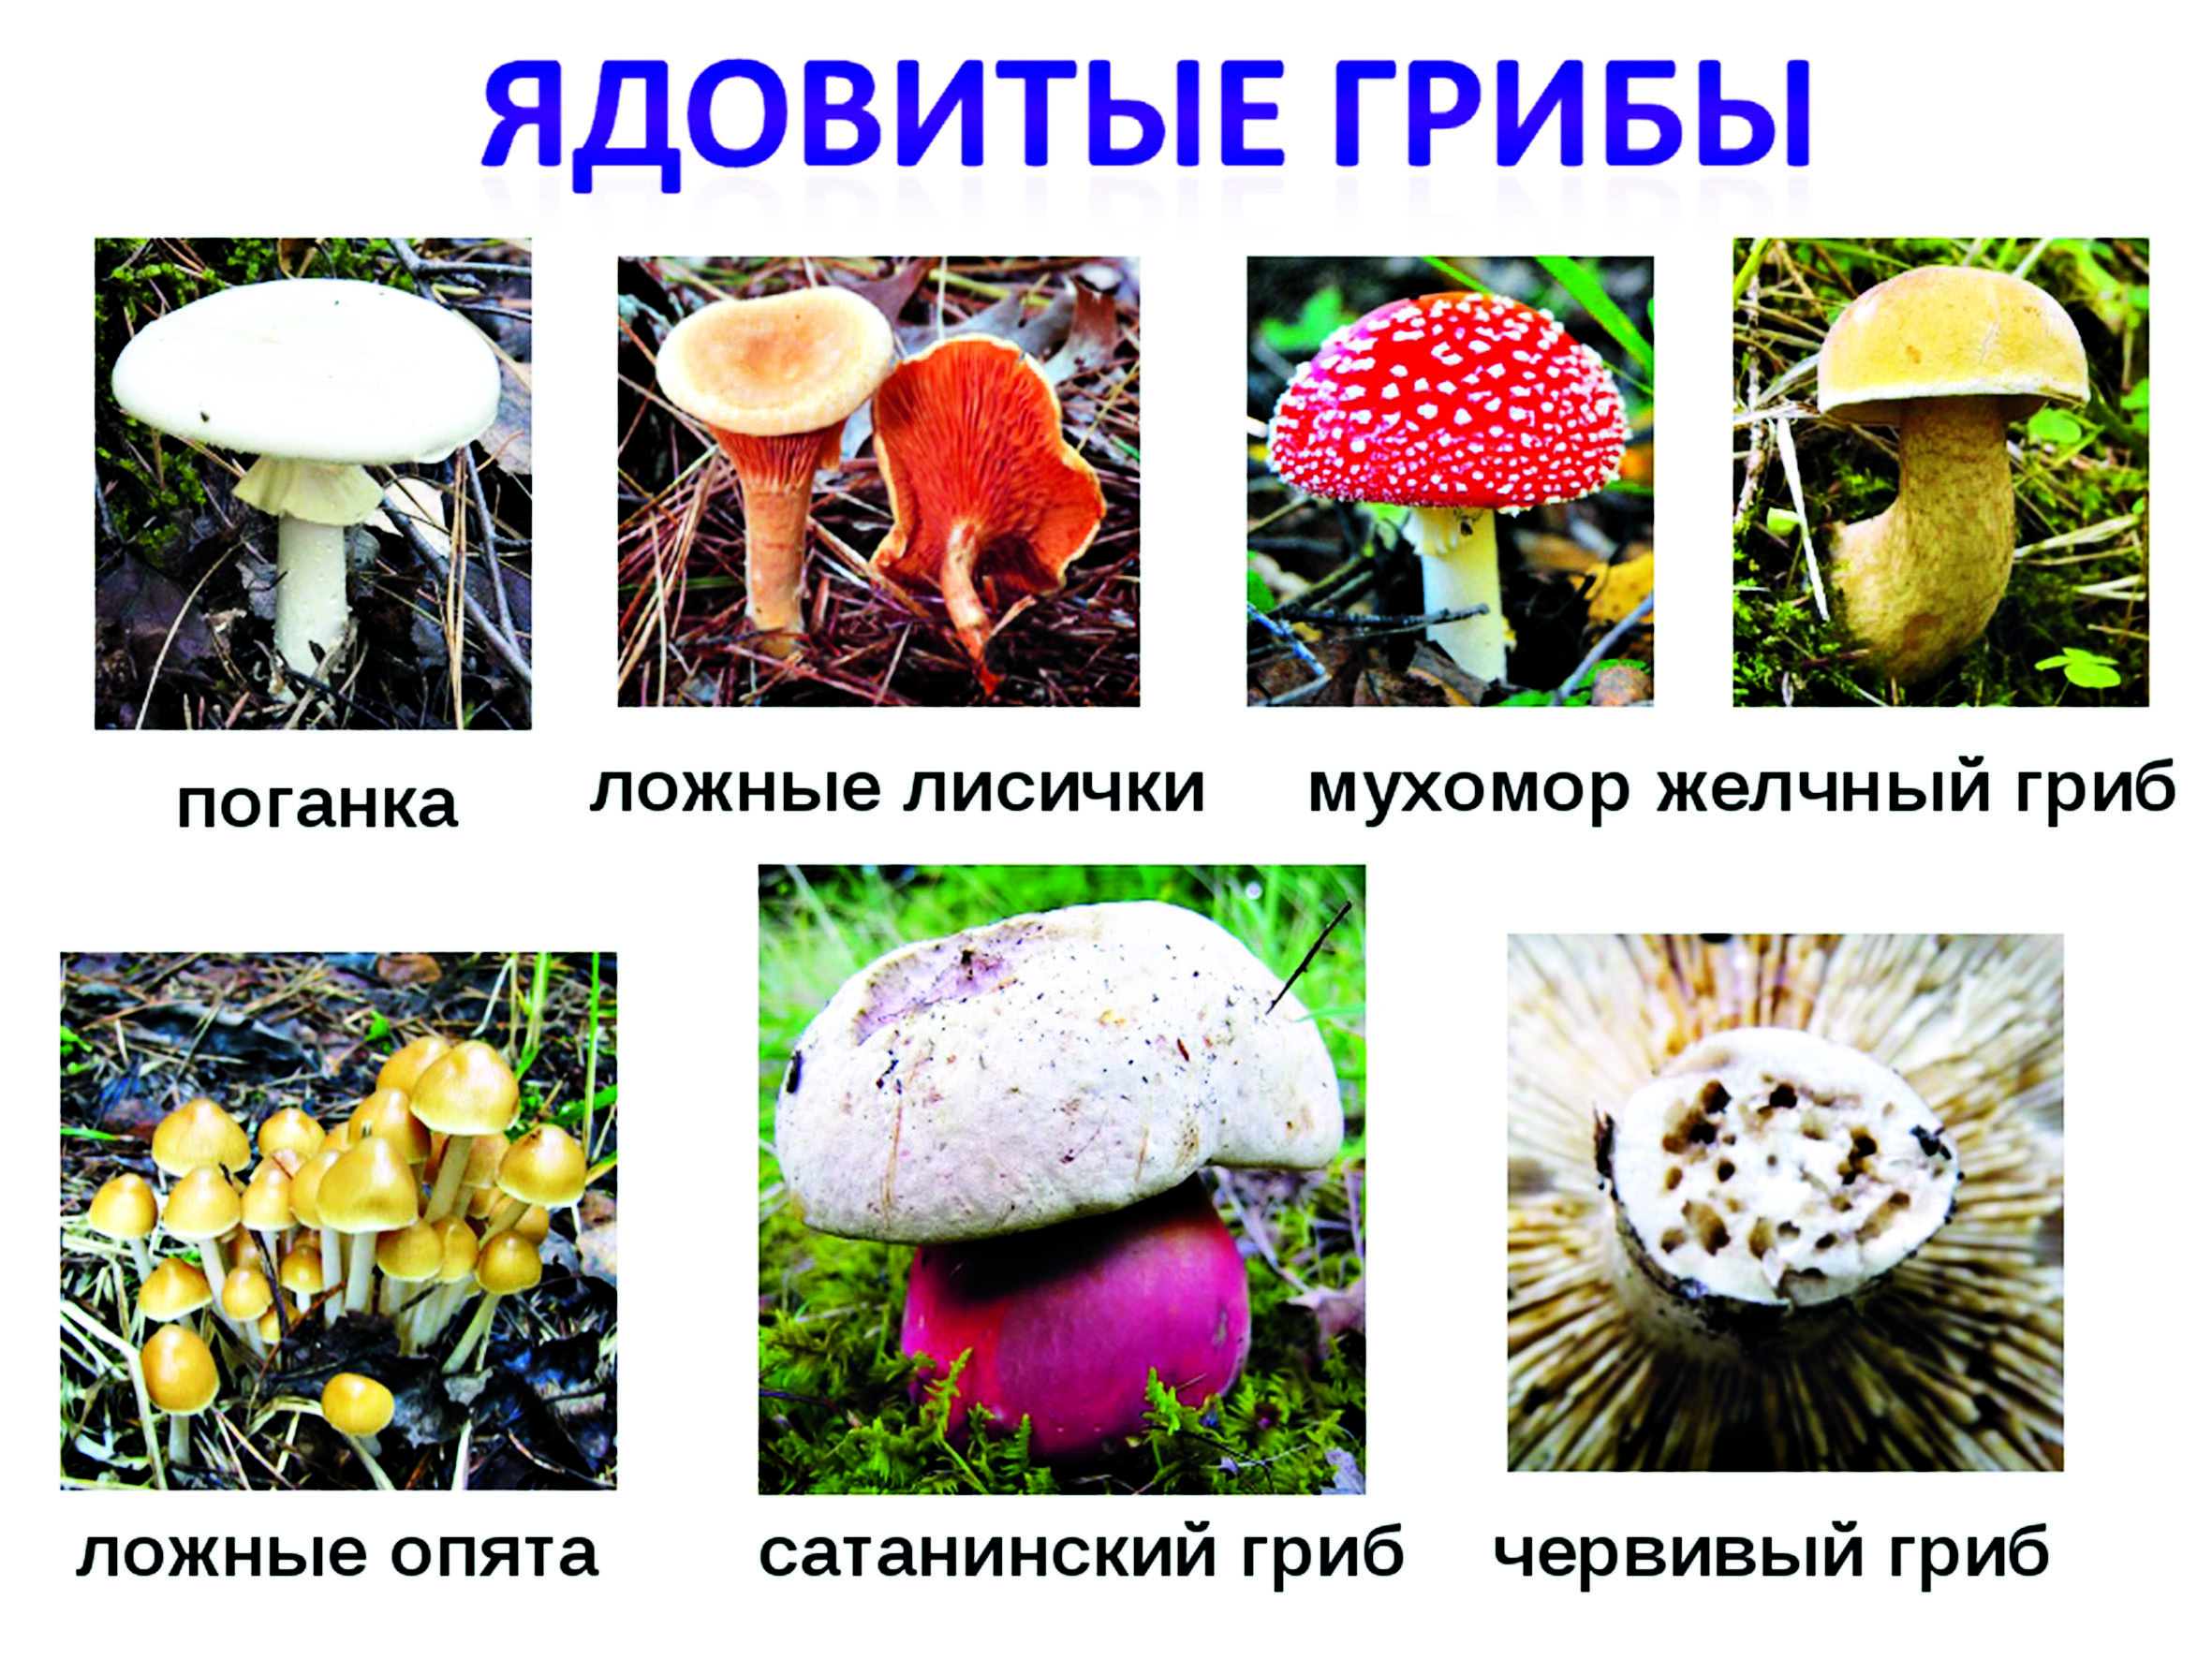 Как начать собирать грибы: инструкция для новичков — the village казахстан